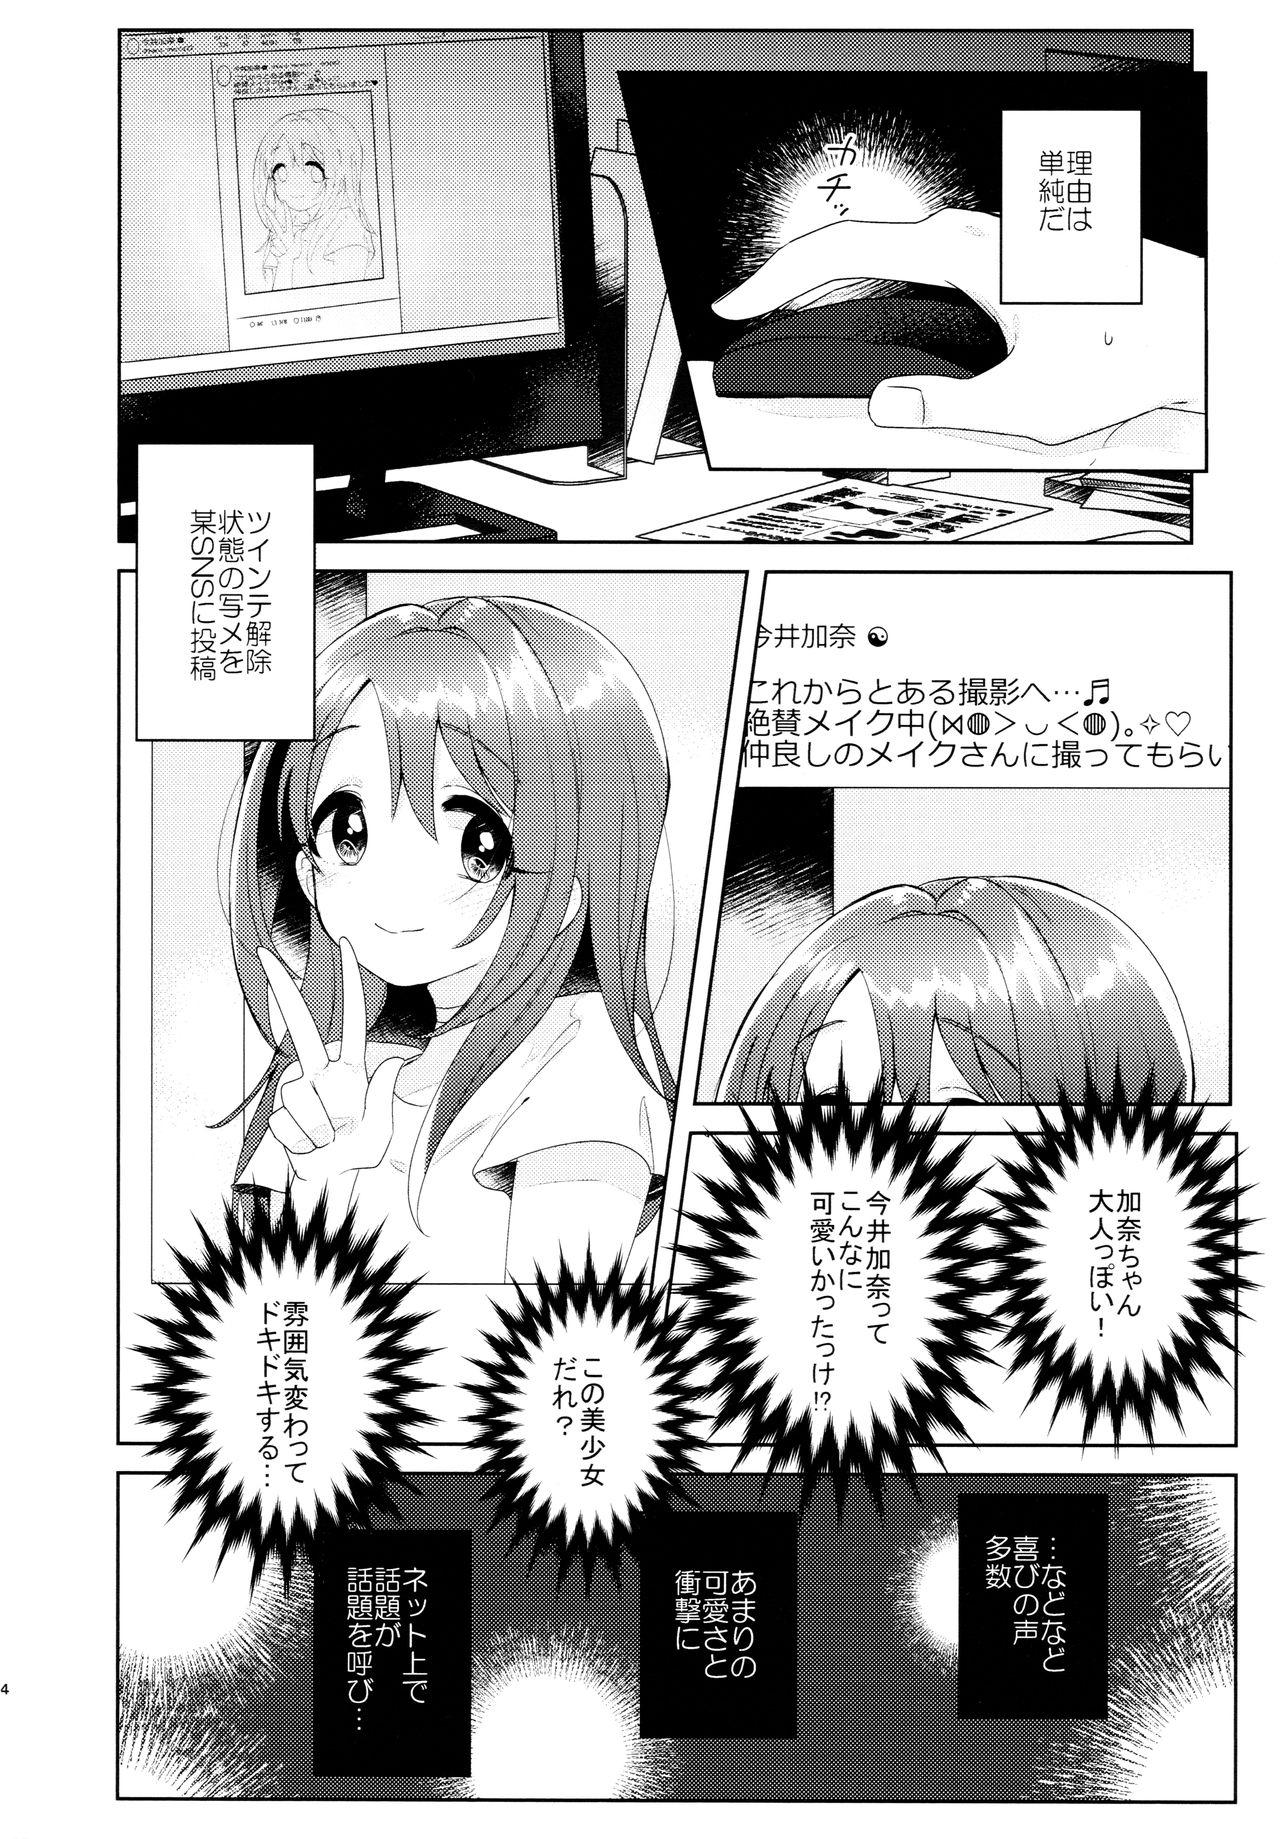 Sharing Kana-chan no Ribbon - The idolmaster Abg - Page 5